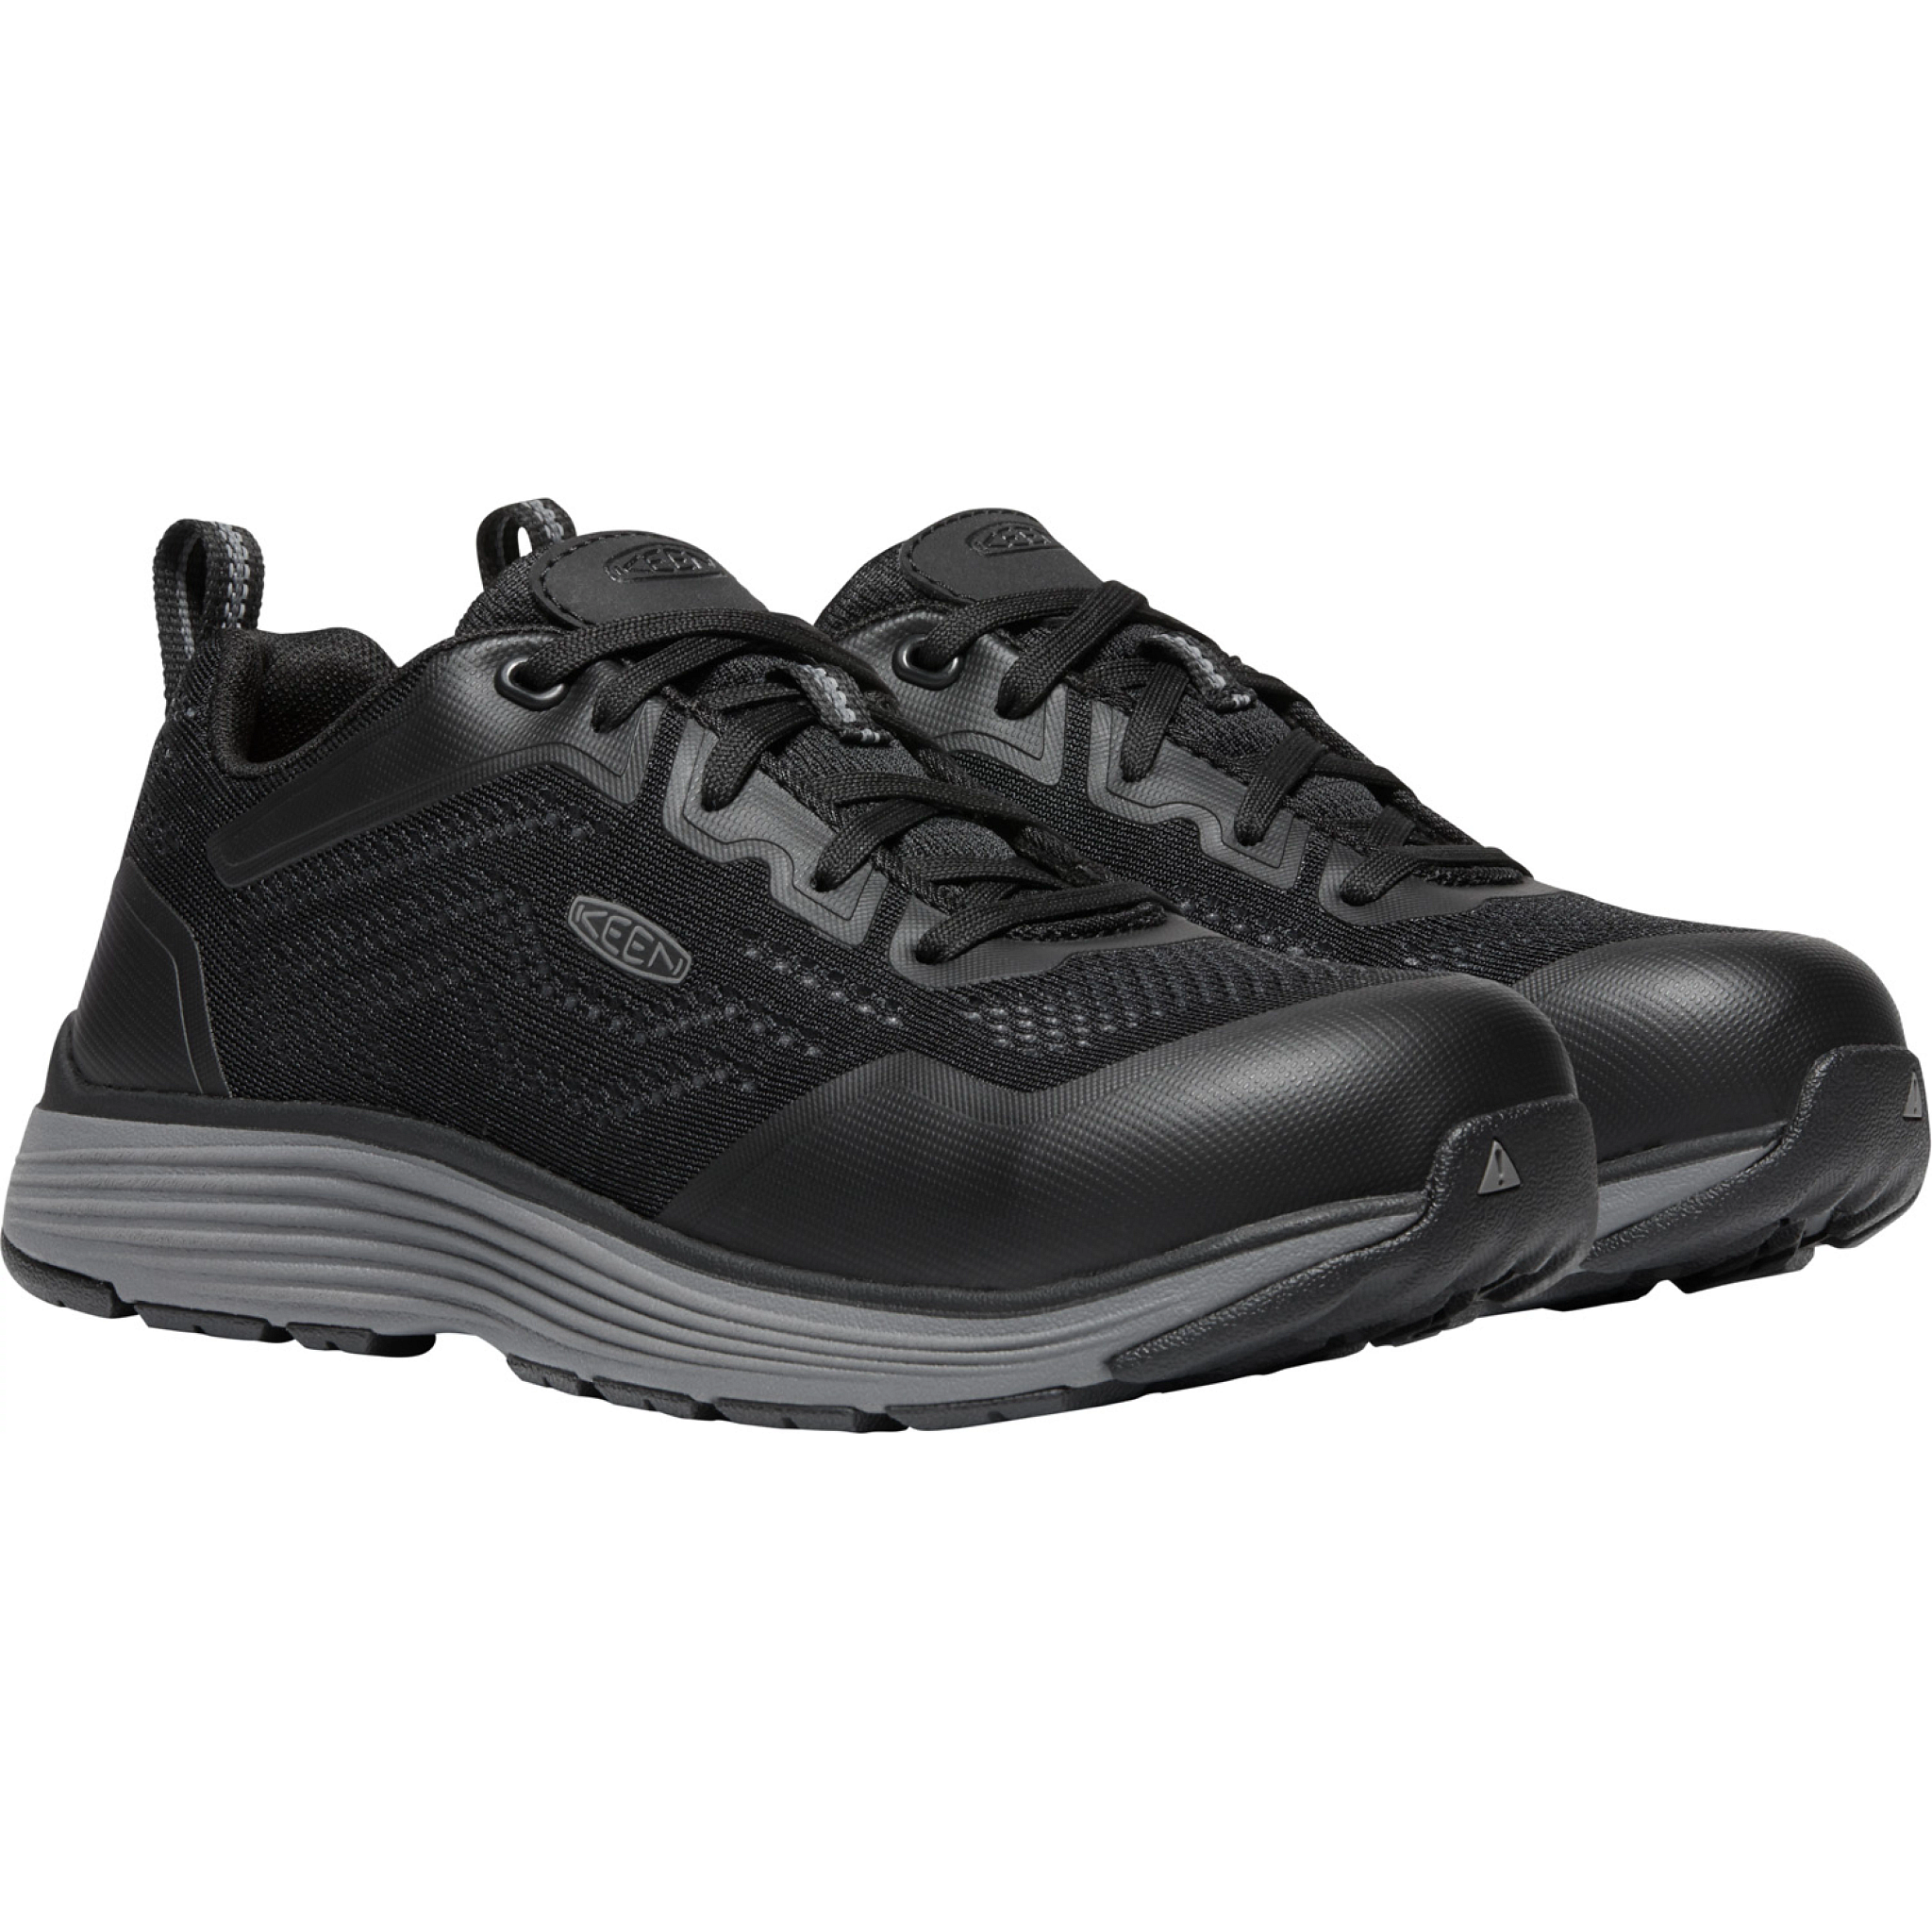 KEEN Utility Women's SPARTA II Aluminum Toe Work Shoe- Black - 1025570 5 / Medium / Grey - Overlook Boots